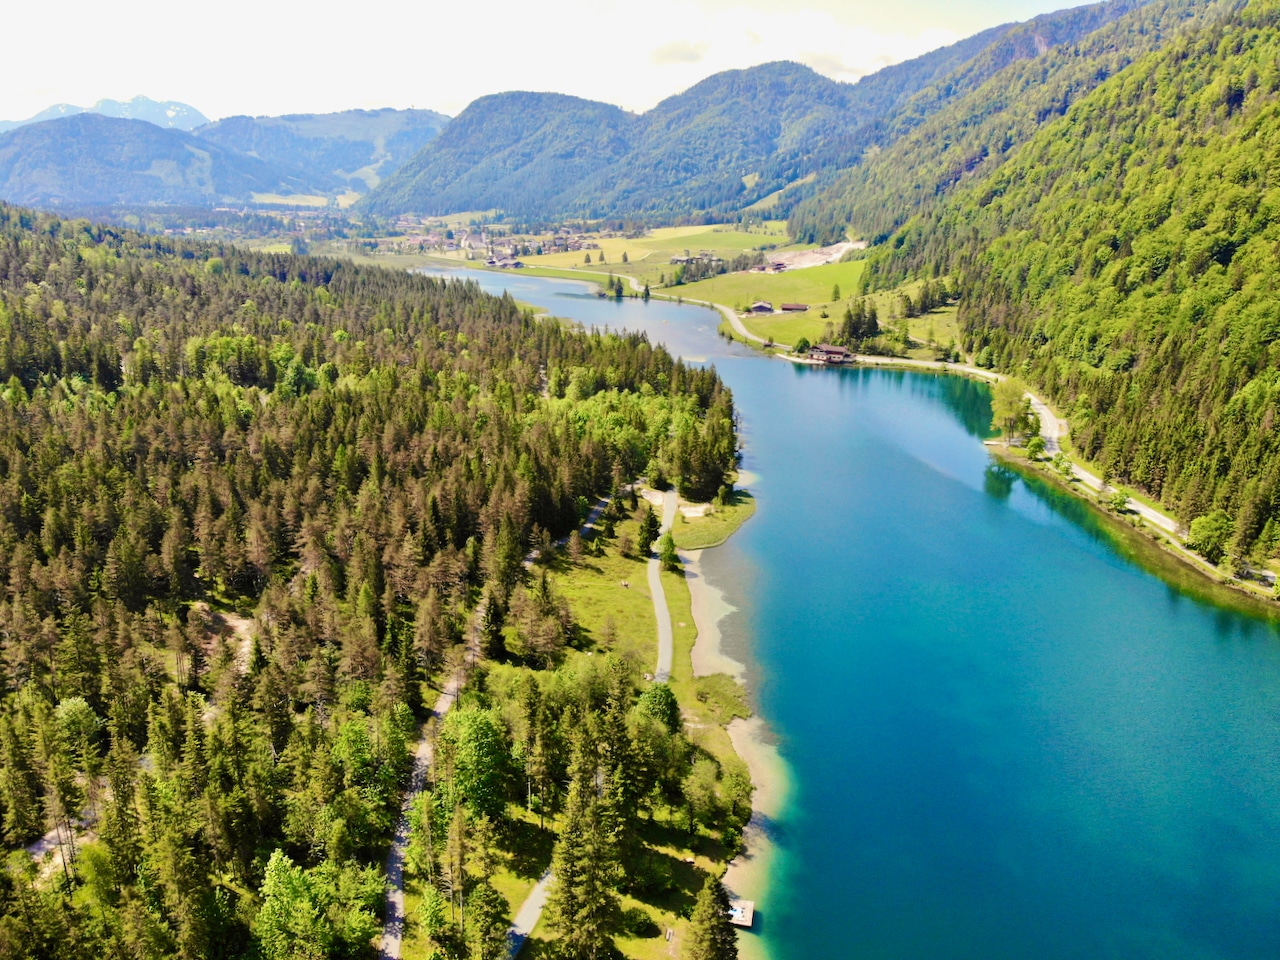 Le lac de montagne d'environ 24 hectares, situé dans le charmant Pillerseetal près de la commune de St. Ulrich am Pillersee à une altitude de 835 mètres, est une véritable attraction pour les habitants et les visiteurs.